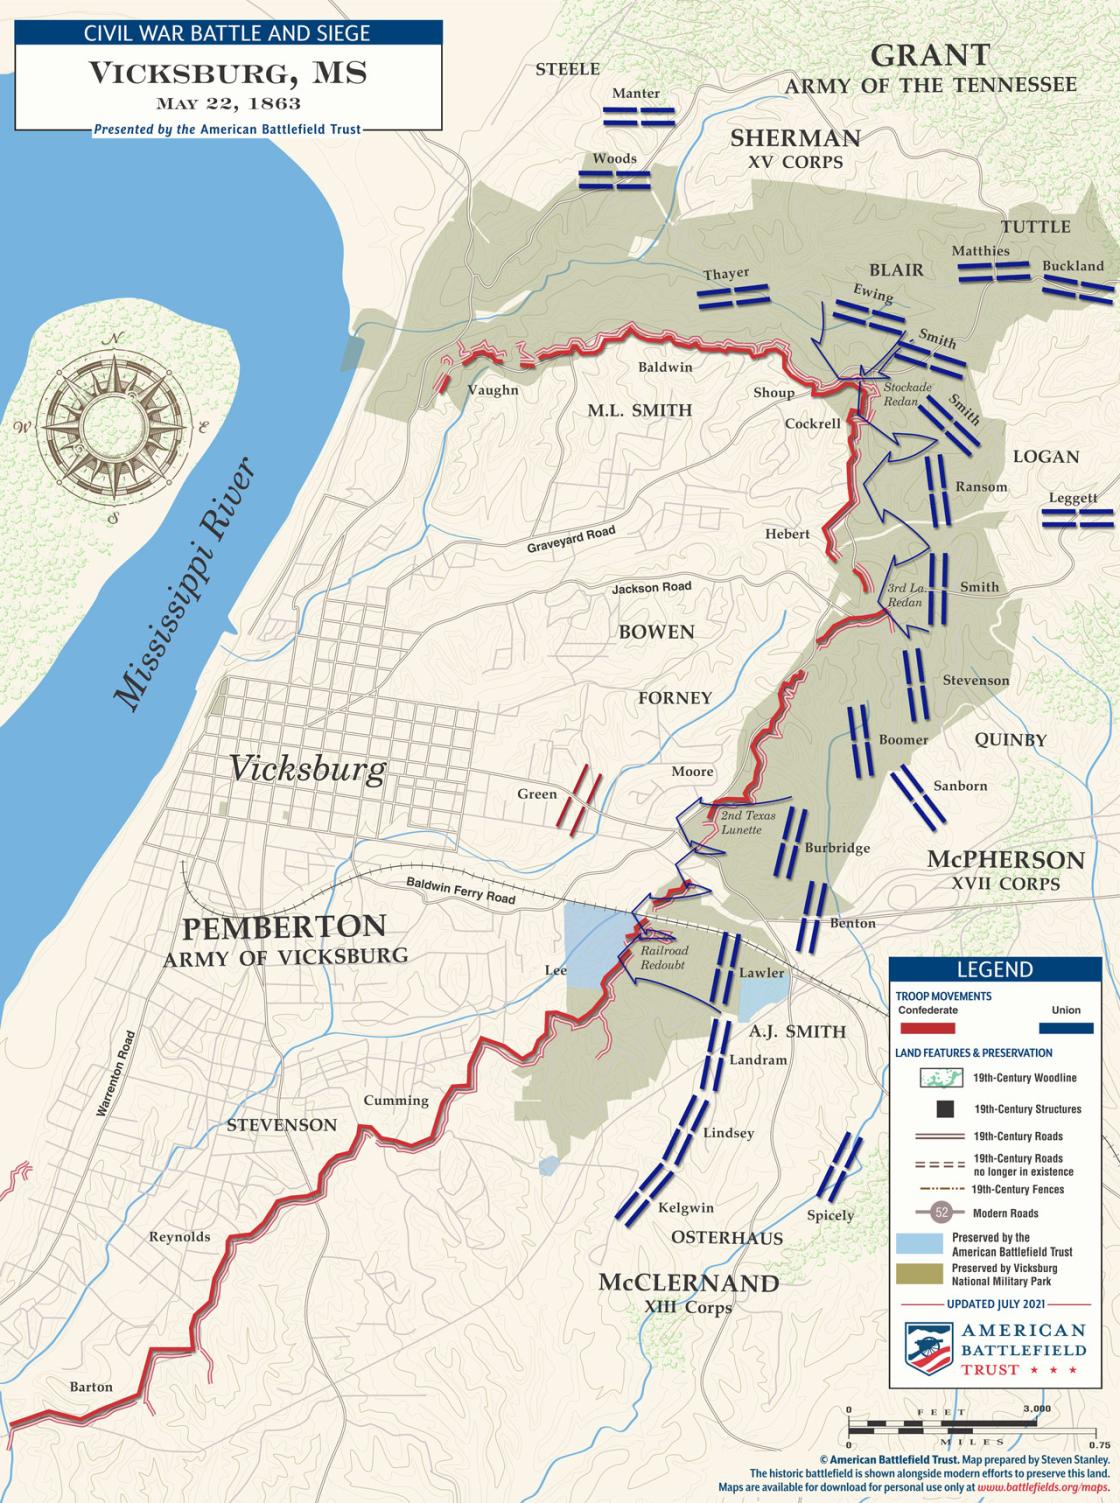 Vicksburg - May 22, 1863 Battle Map